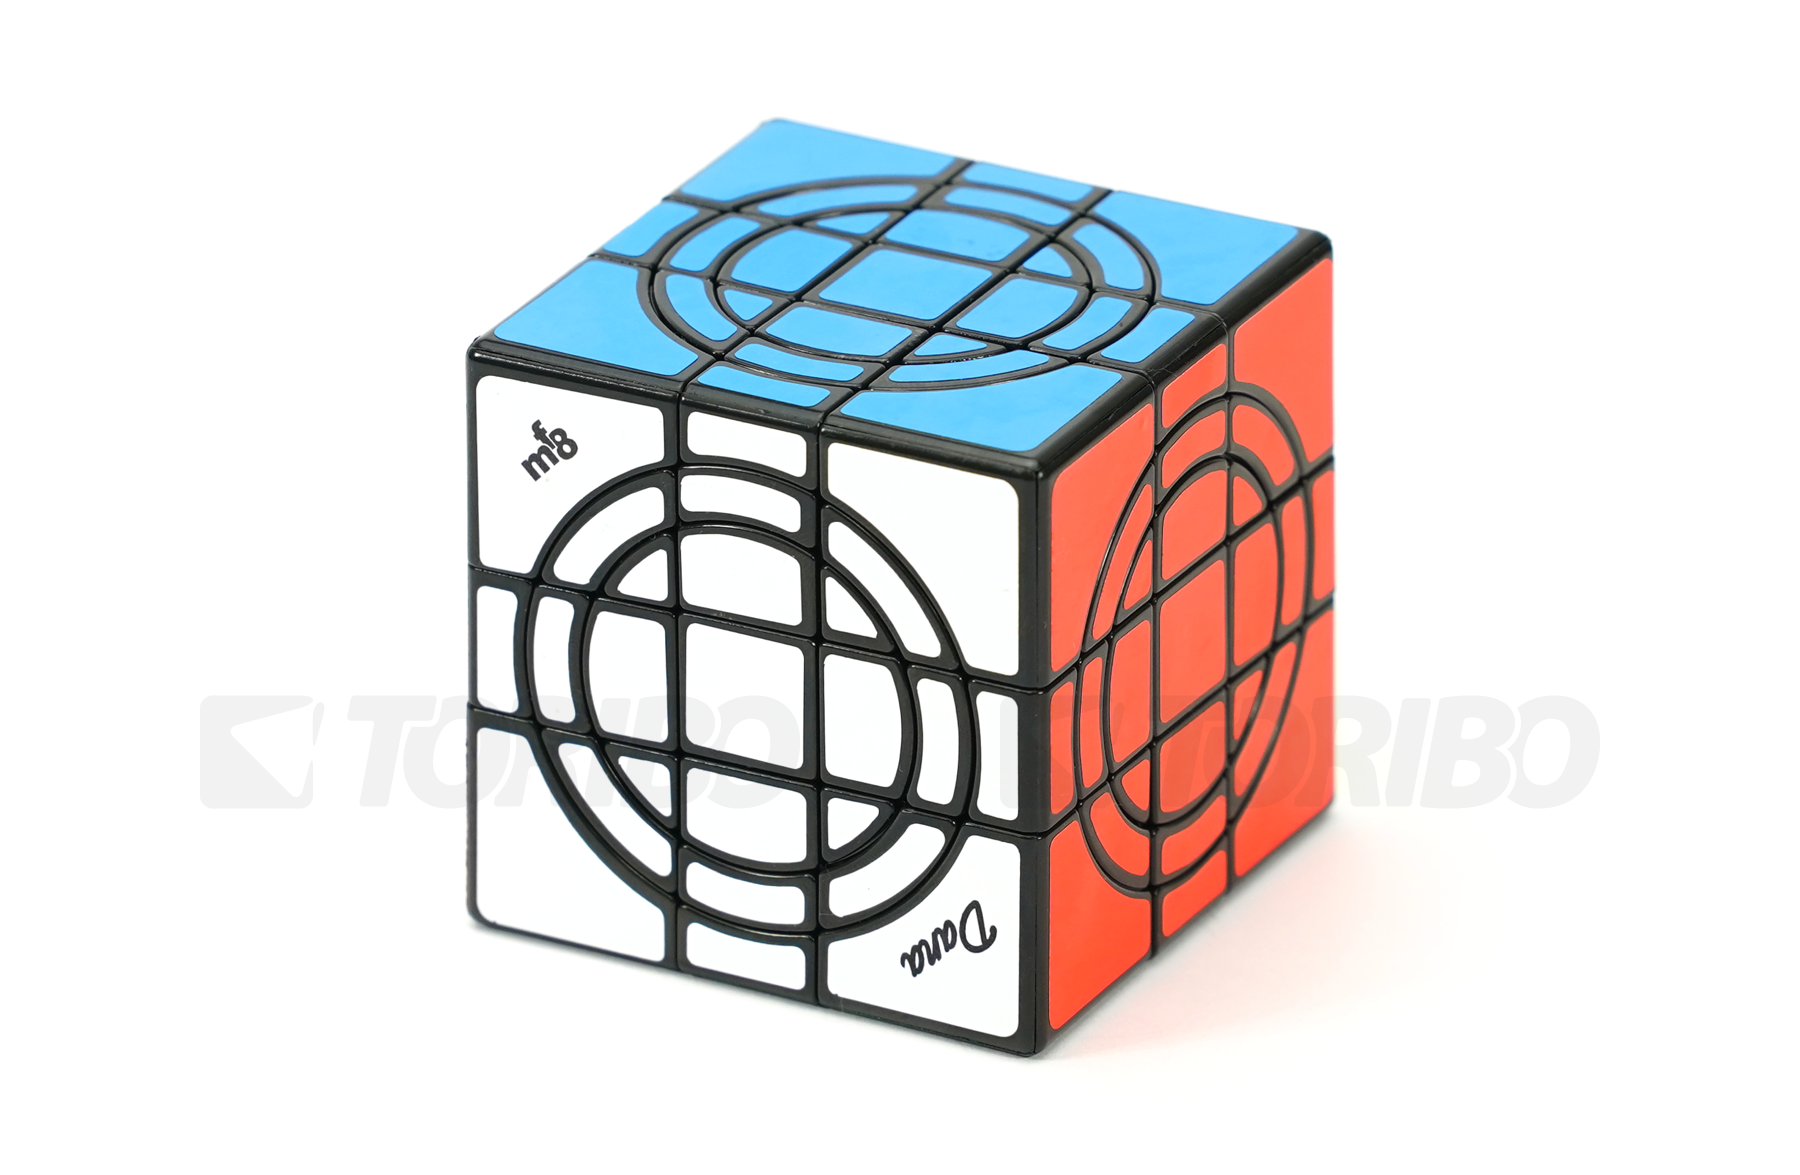 TORIBOストア / mf8 Double Crazy Cube